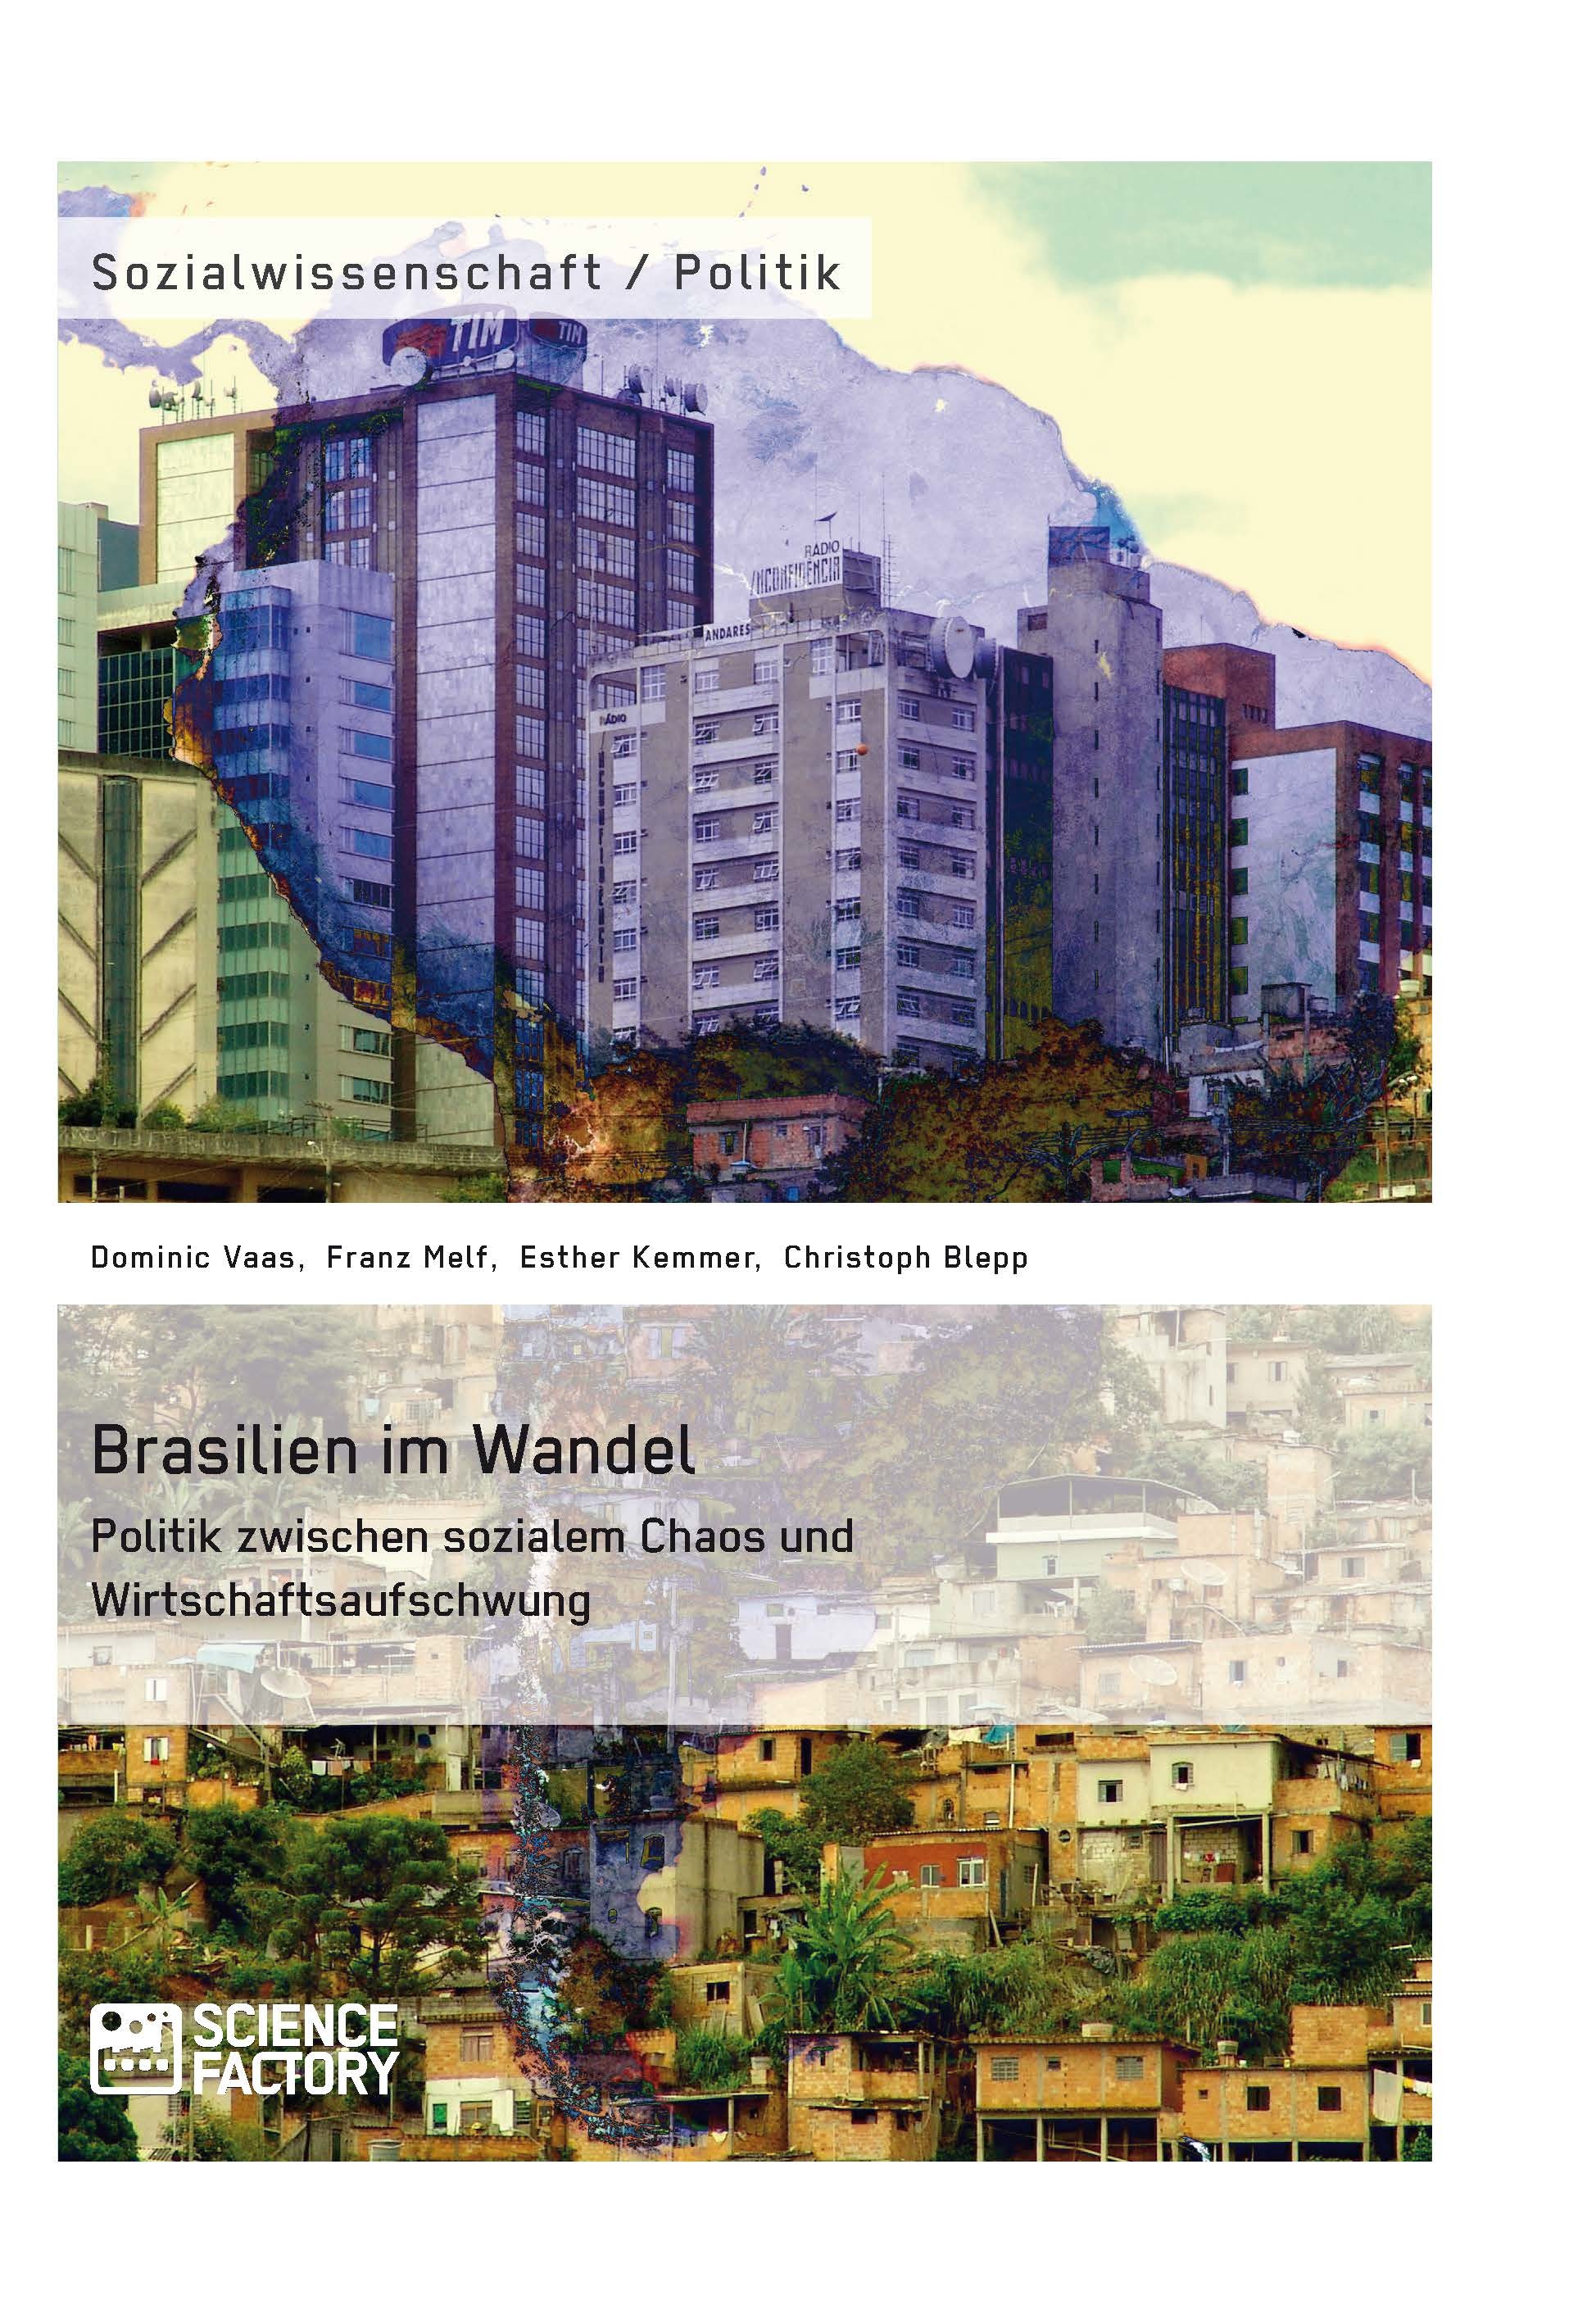 Titre: Brasilien im Wandel. Politik zwischen sozialem Chaos und Wirtschaftsaufschwung